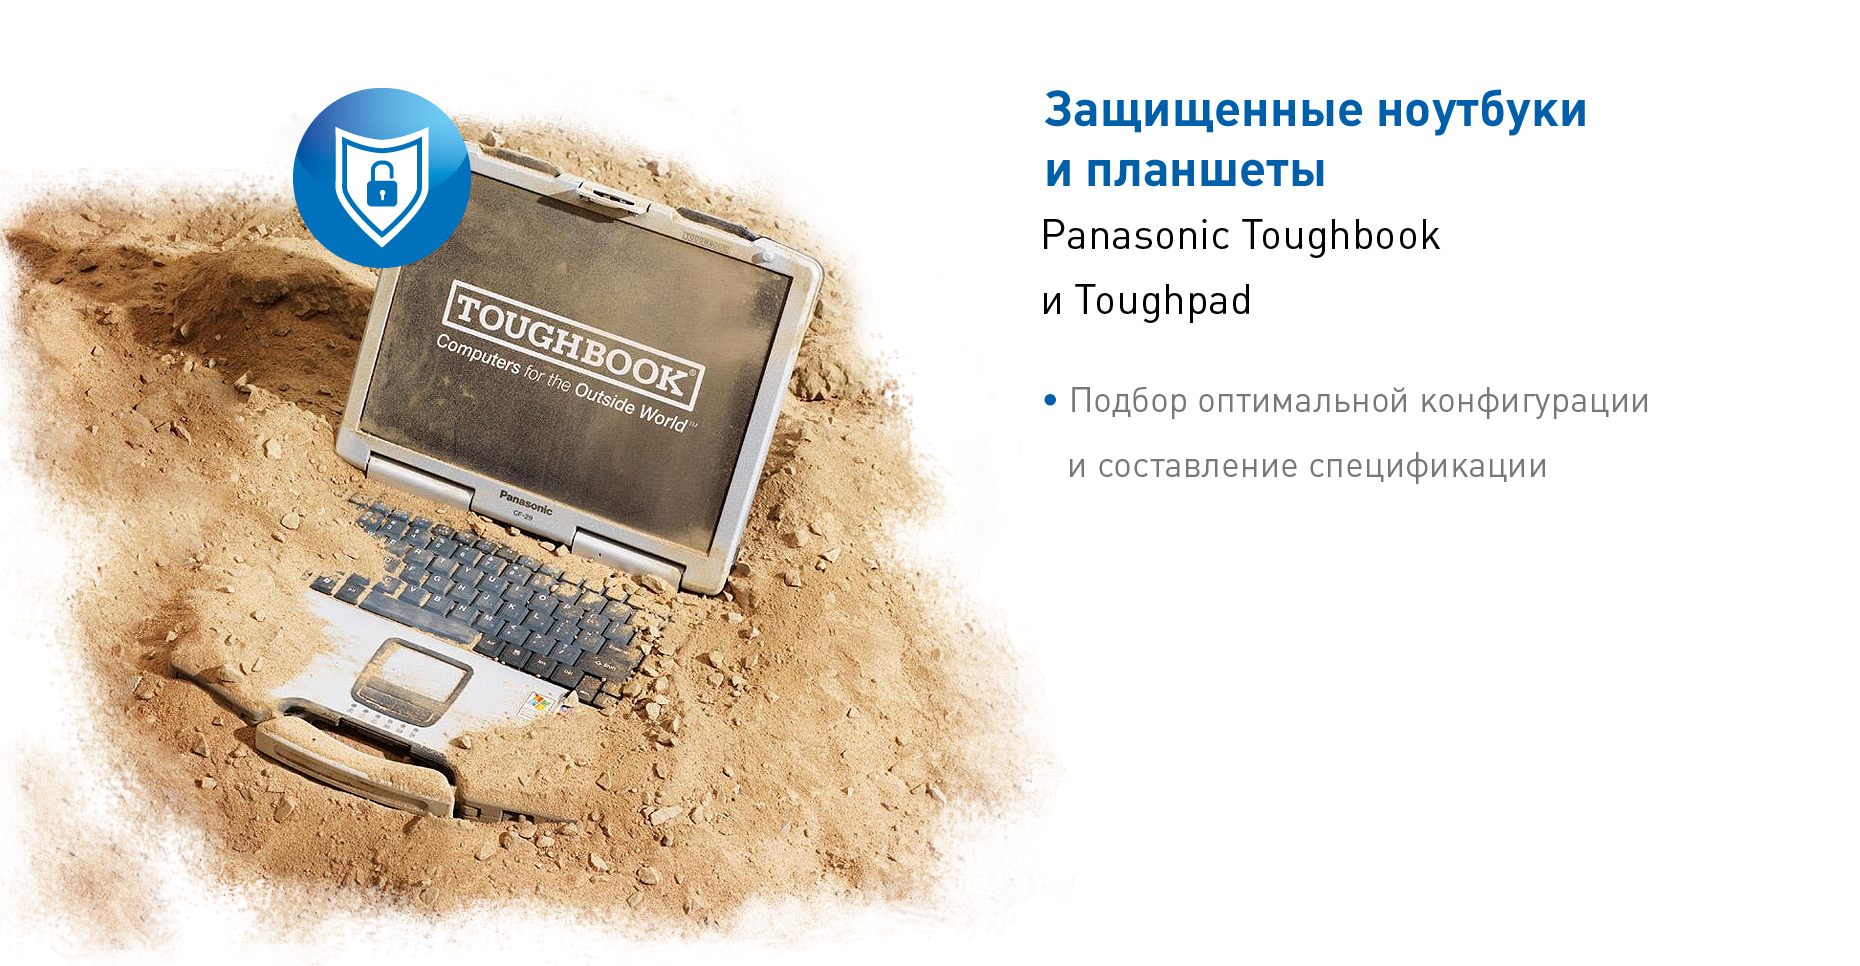 Защищенные ноутбуки и планшеты Panasonic Toughbook и Toughpad